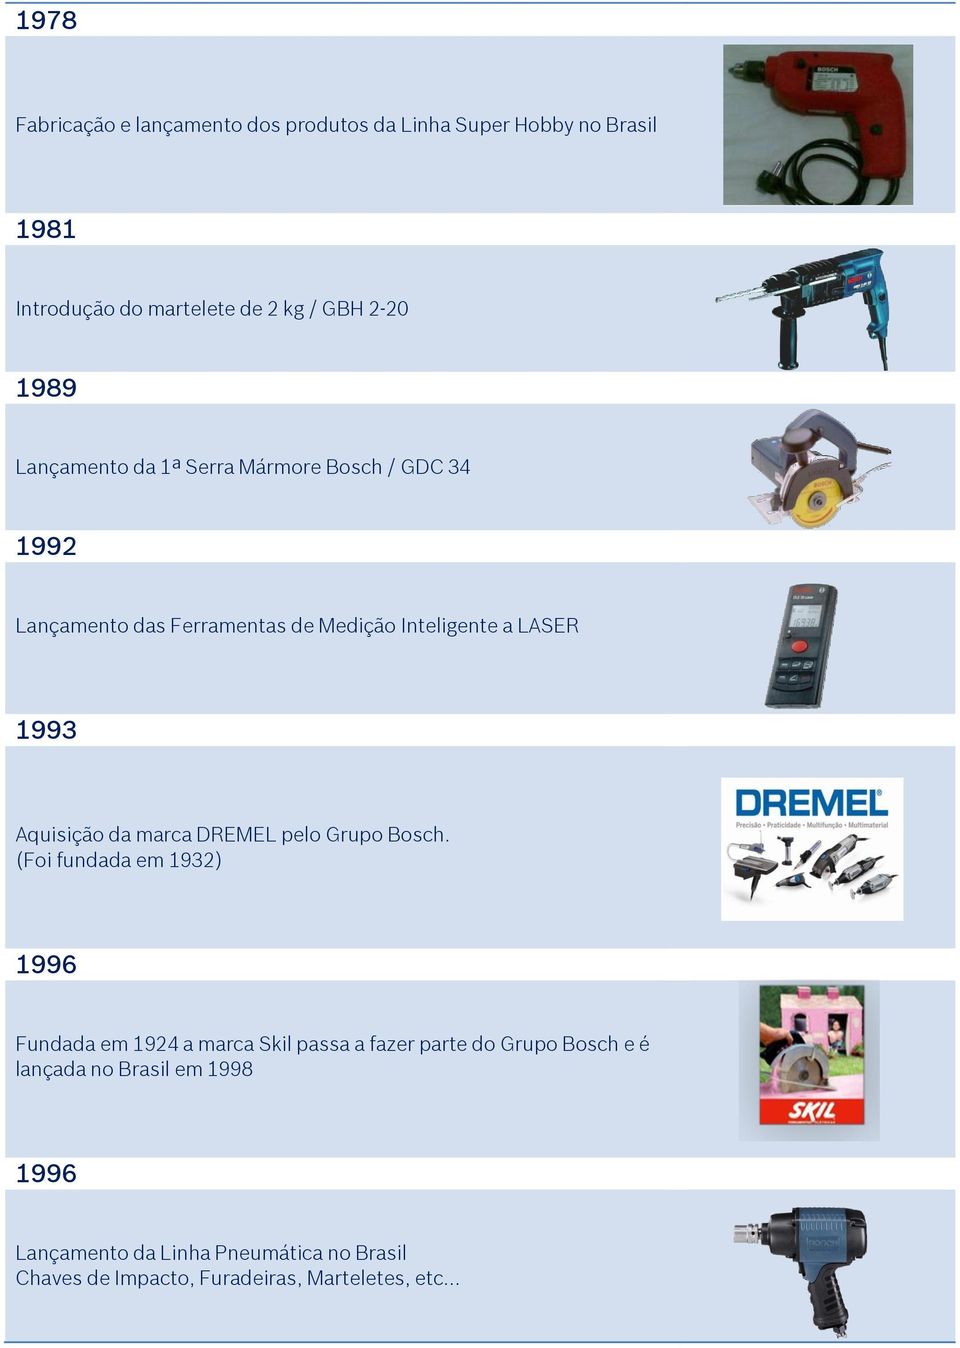 Aquisição da marca DREMEL pelo Grupo Bosch.